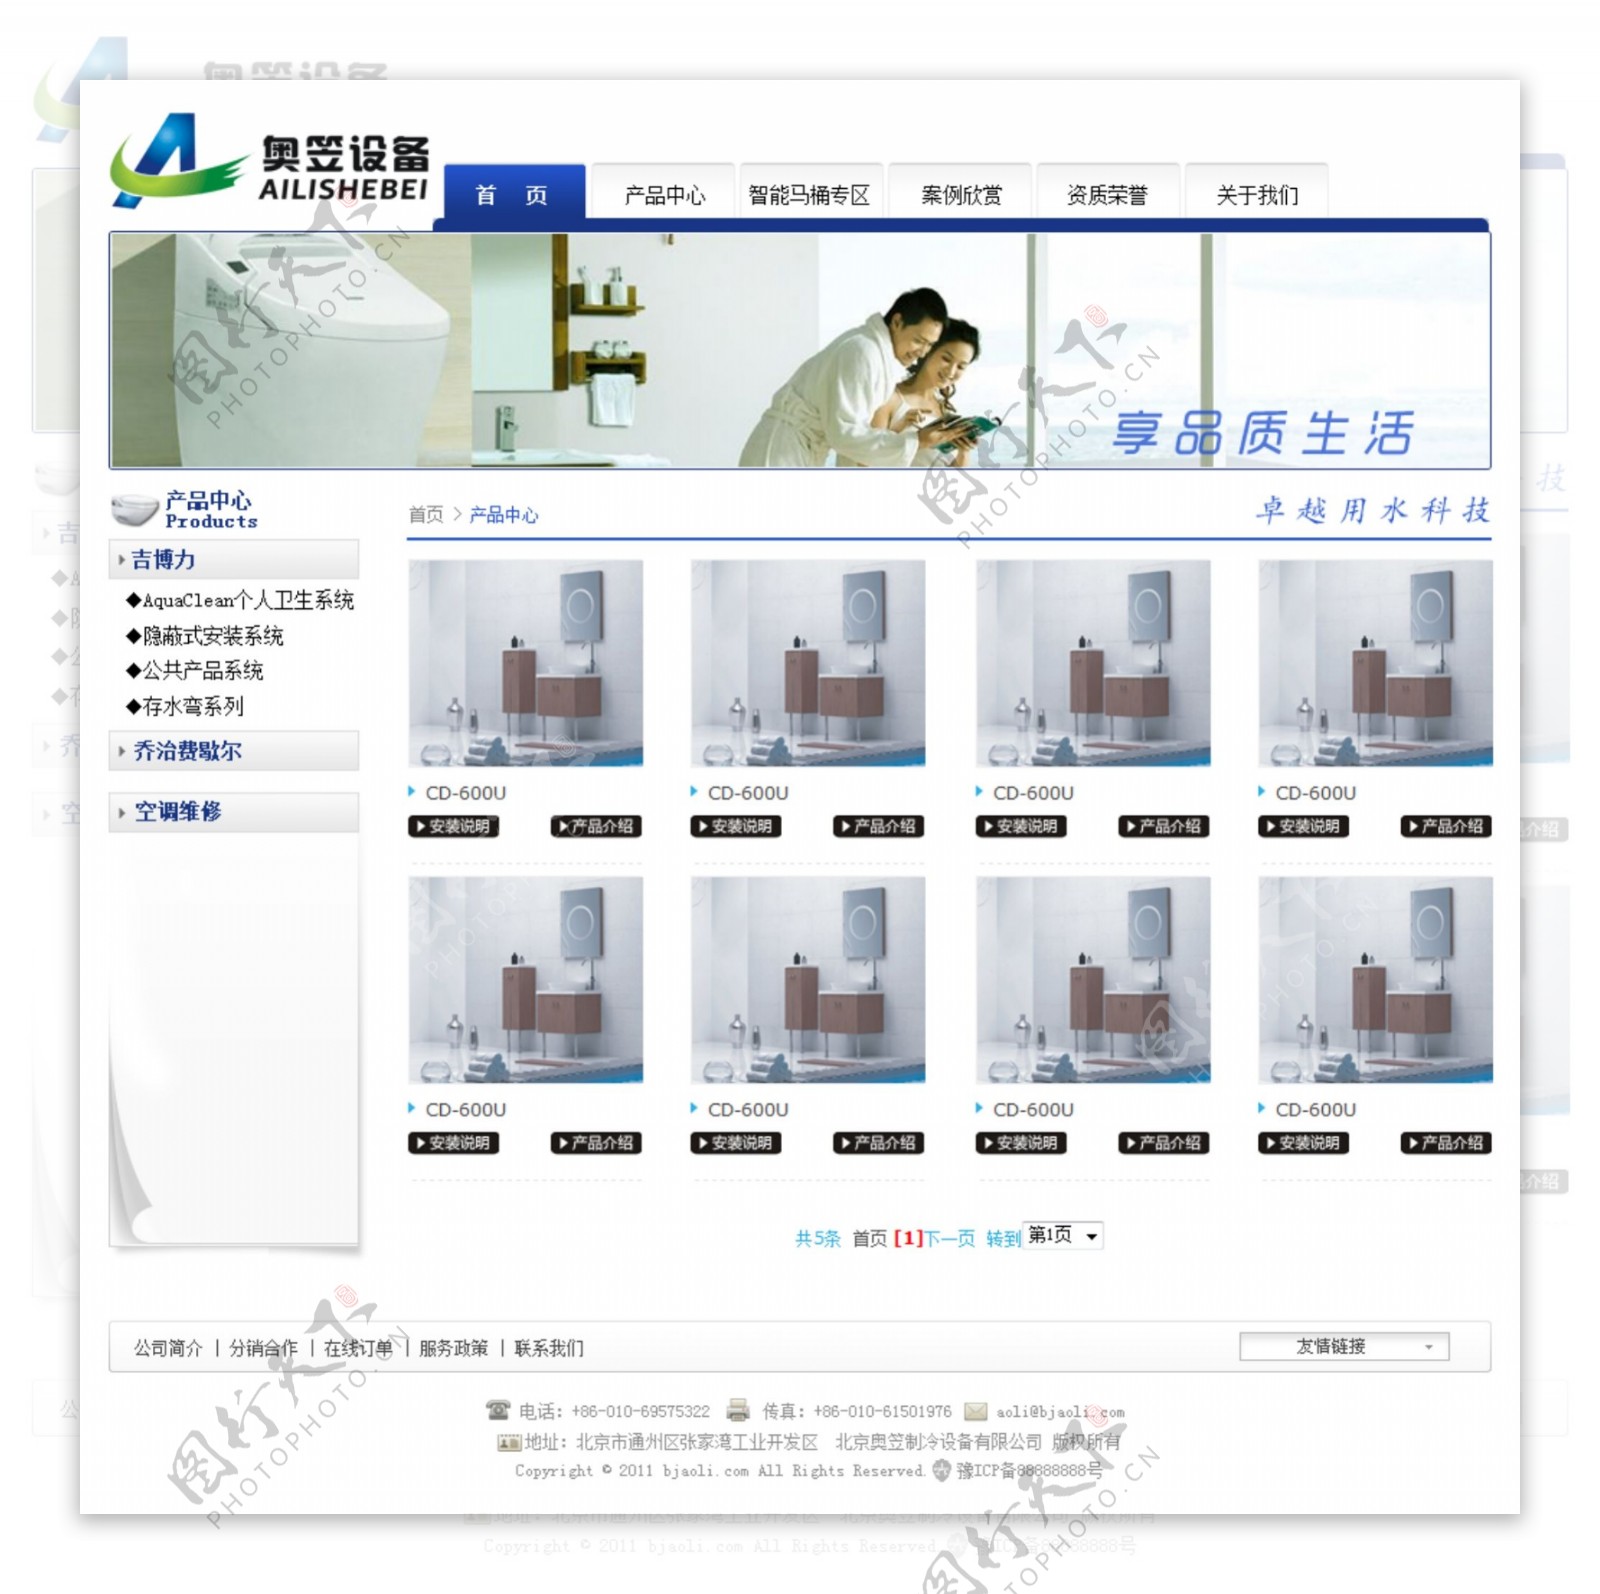 卫浴类网站产品页效果图图片